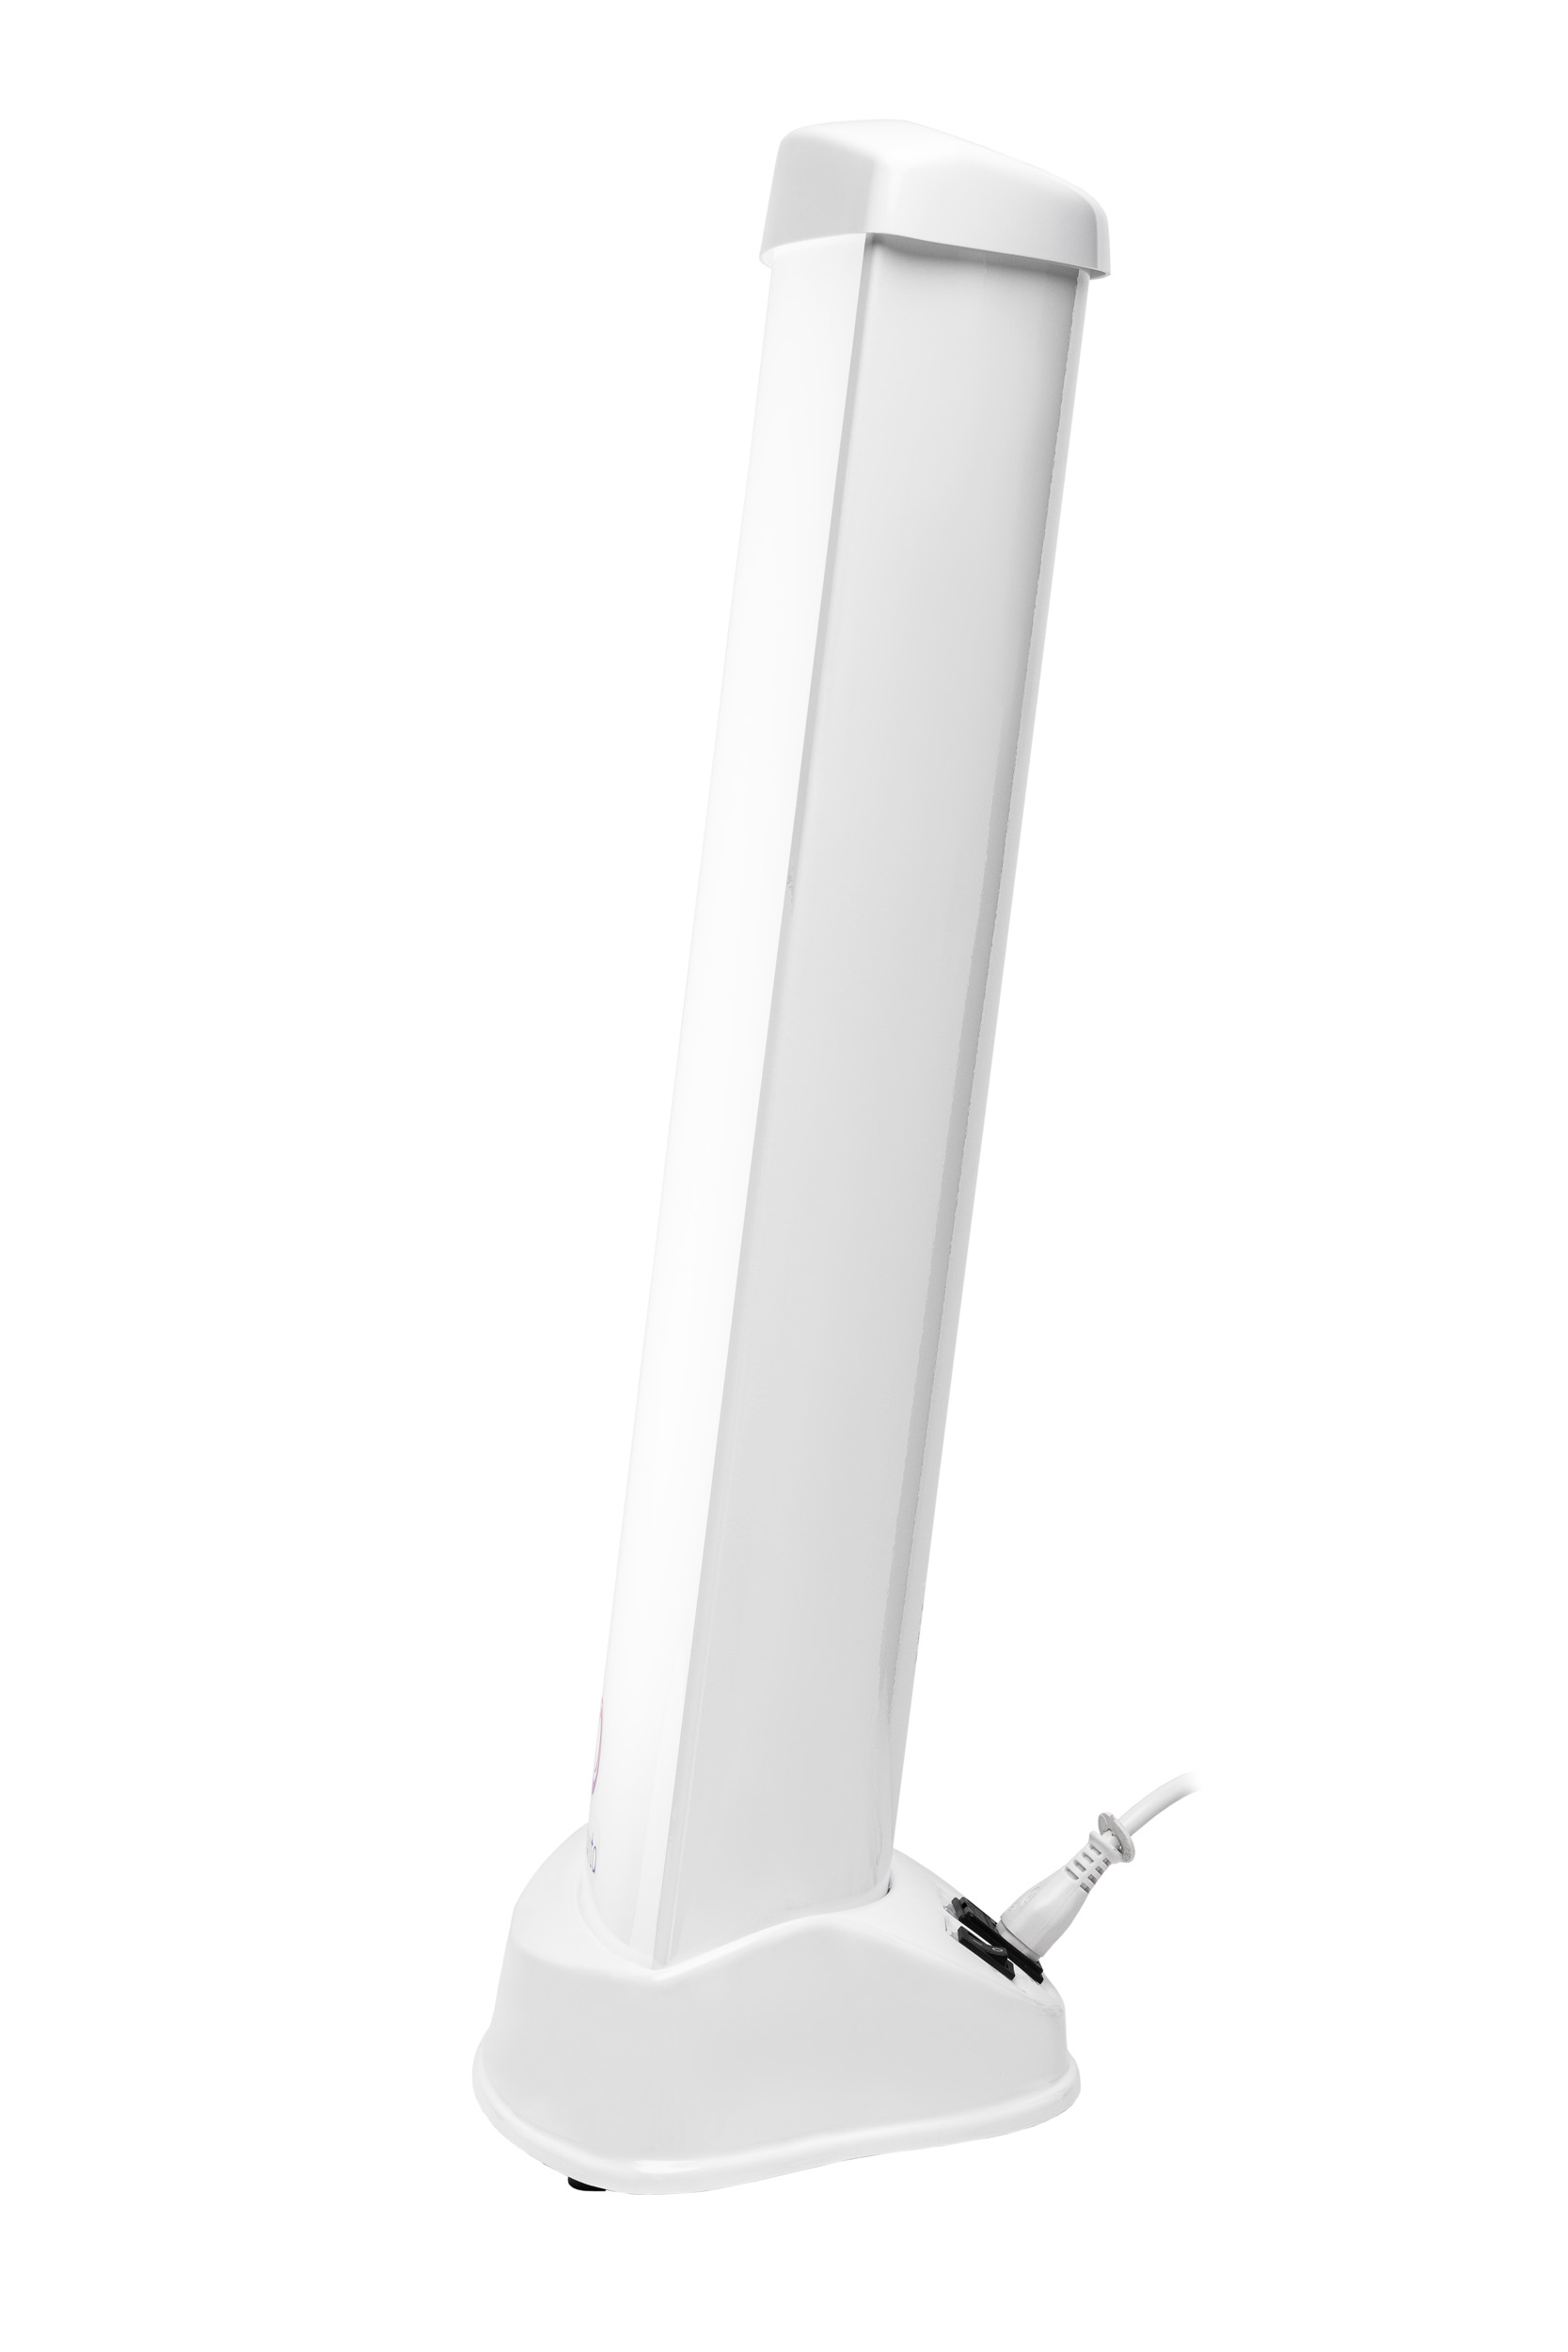 Lampy do fototerapii światłem białym ULTRAVIOL Fotovita FV-10M (średnia) - lampa antydepresyjna